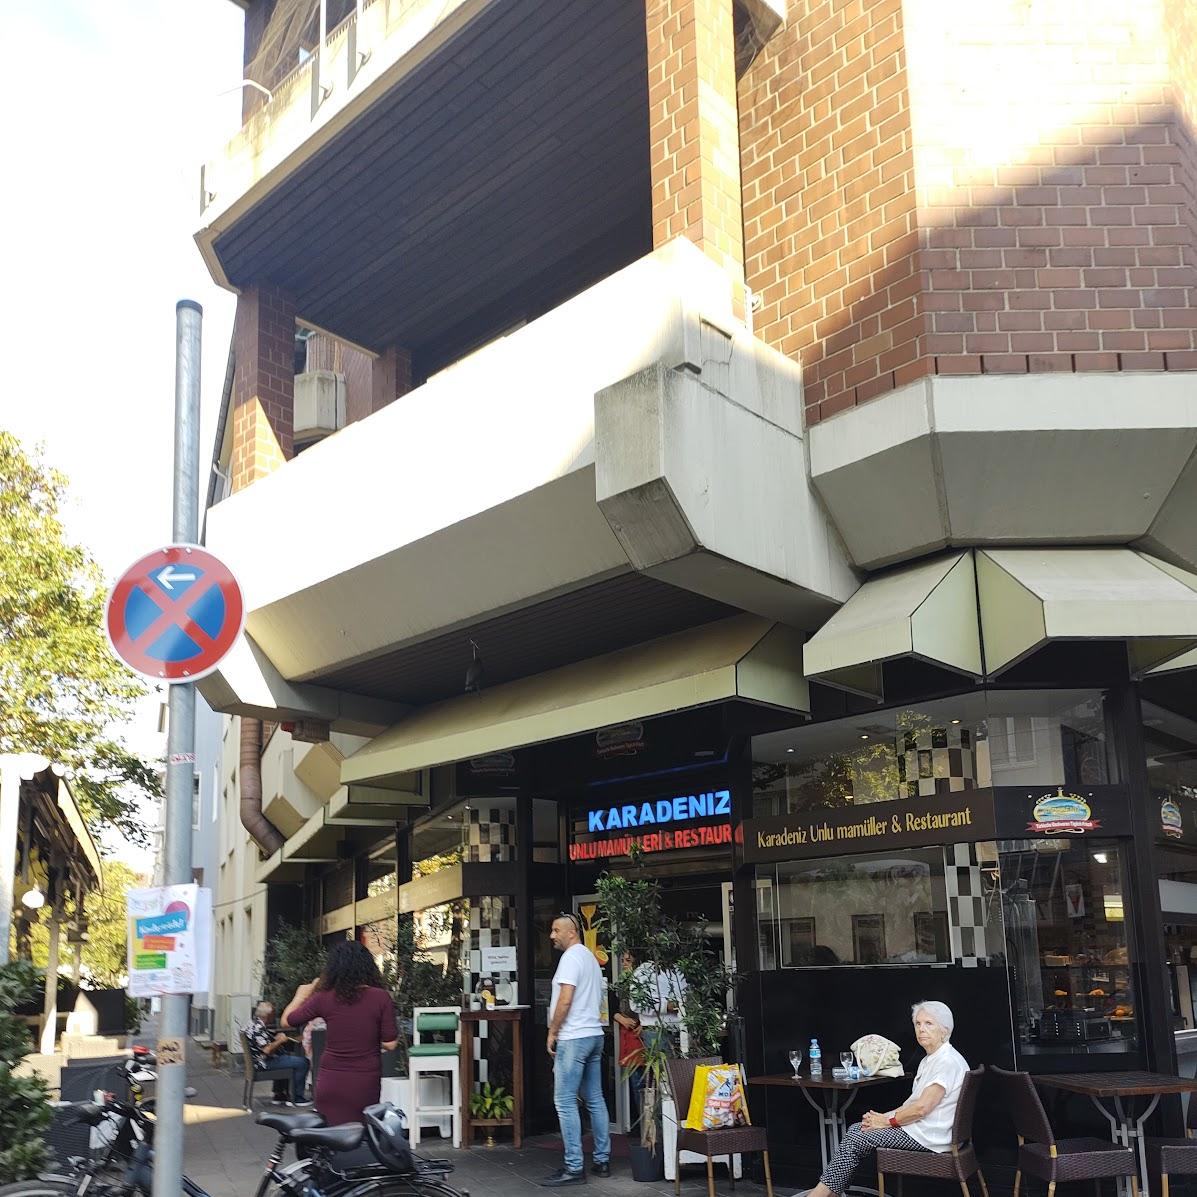 Restaurant "Karadeniz" in Düsseldorf